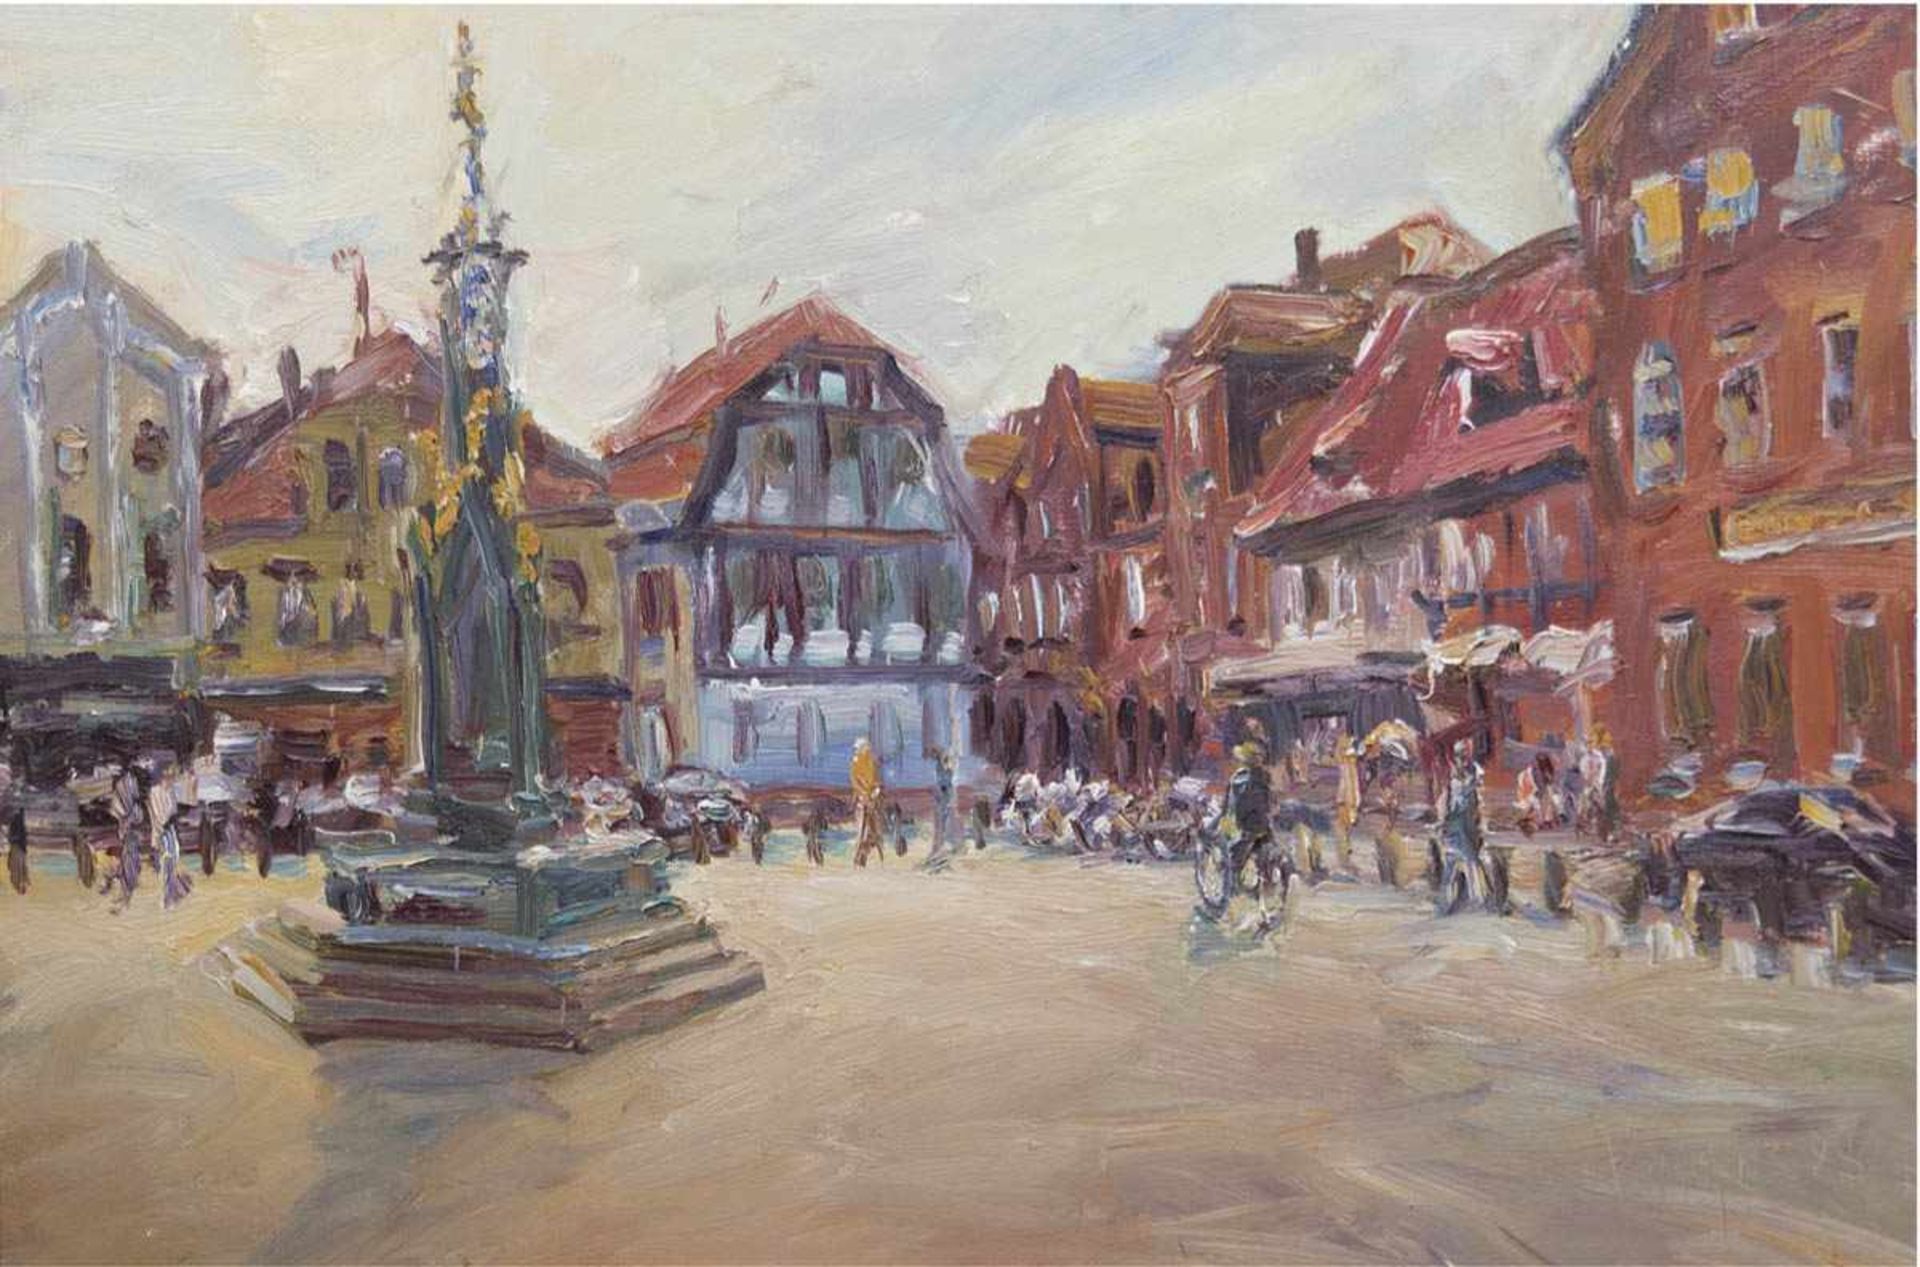 Maler des 20. Jh. "Brunnen auf Marktplatz", Öl/Lw., undeutlich sign. u. dat. '98? u.r.,80x120 cm,